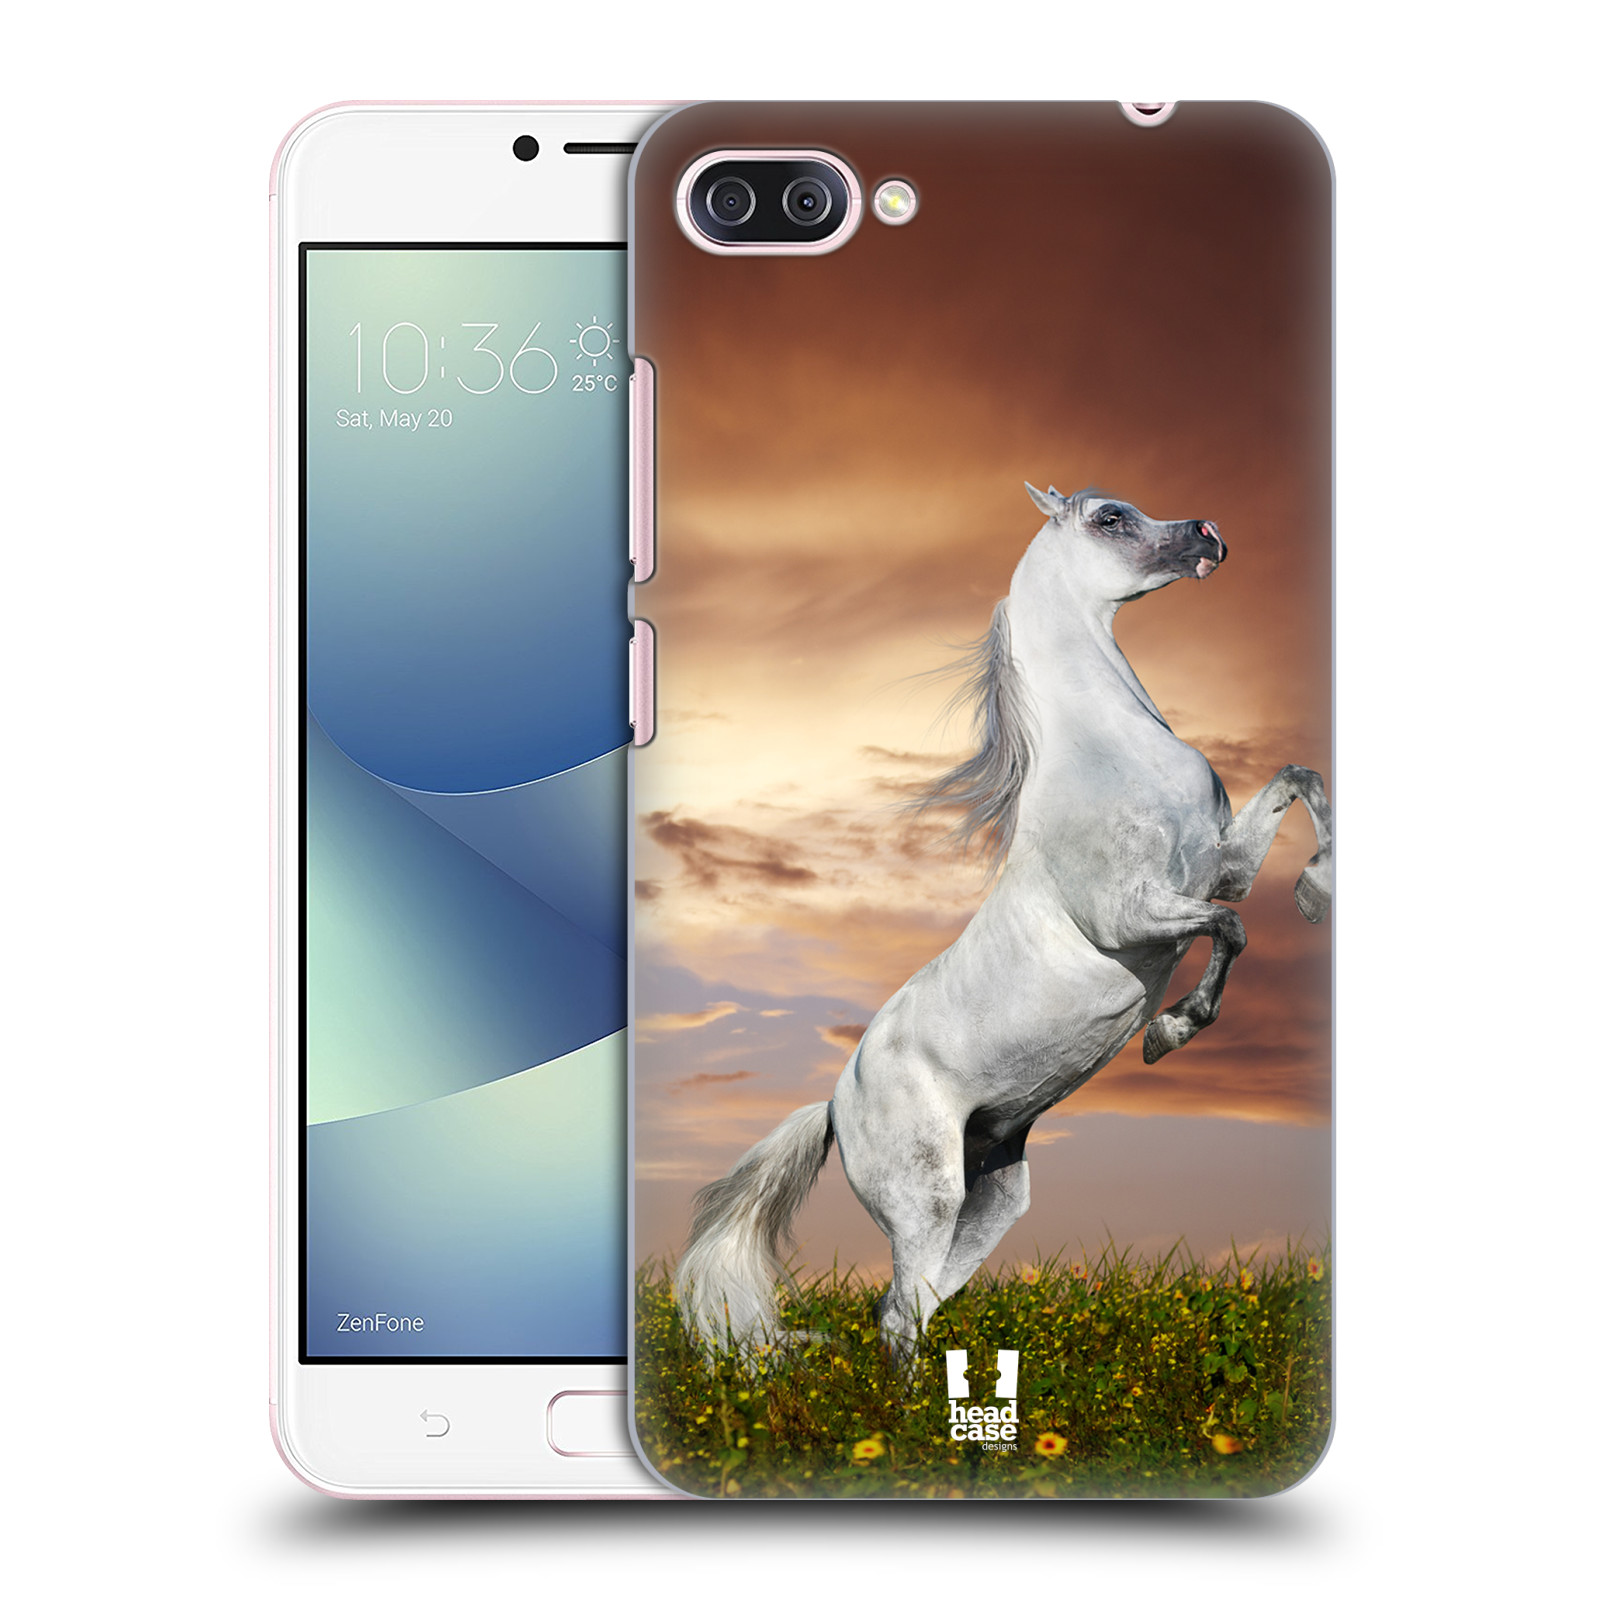 Zadní obal pro mobil Asus Zenfone 4 MAX / 4 MAX PRO (ZC554KL) - HEAD CASE - Svět zvířat divoký kůň